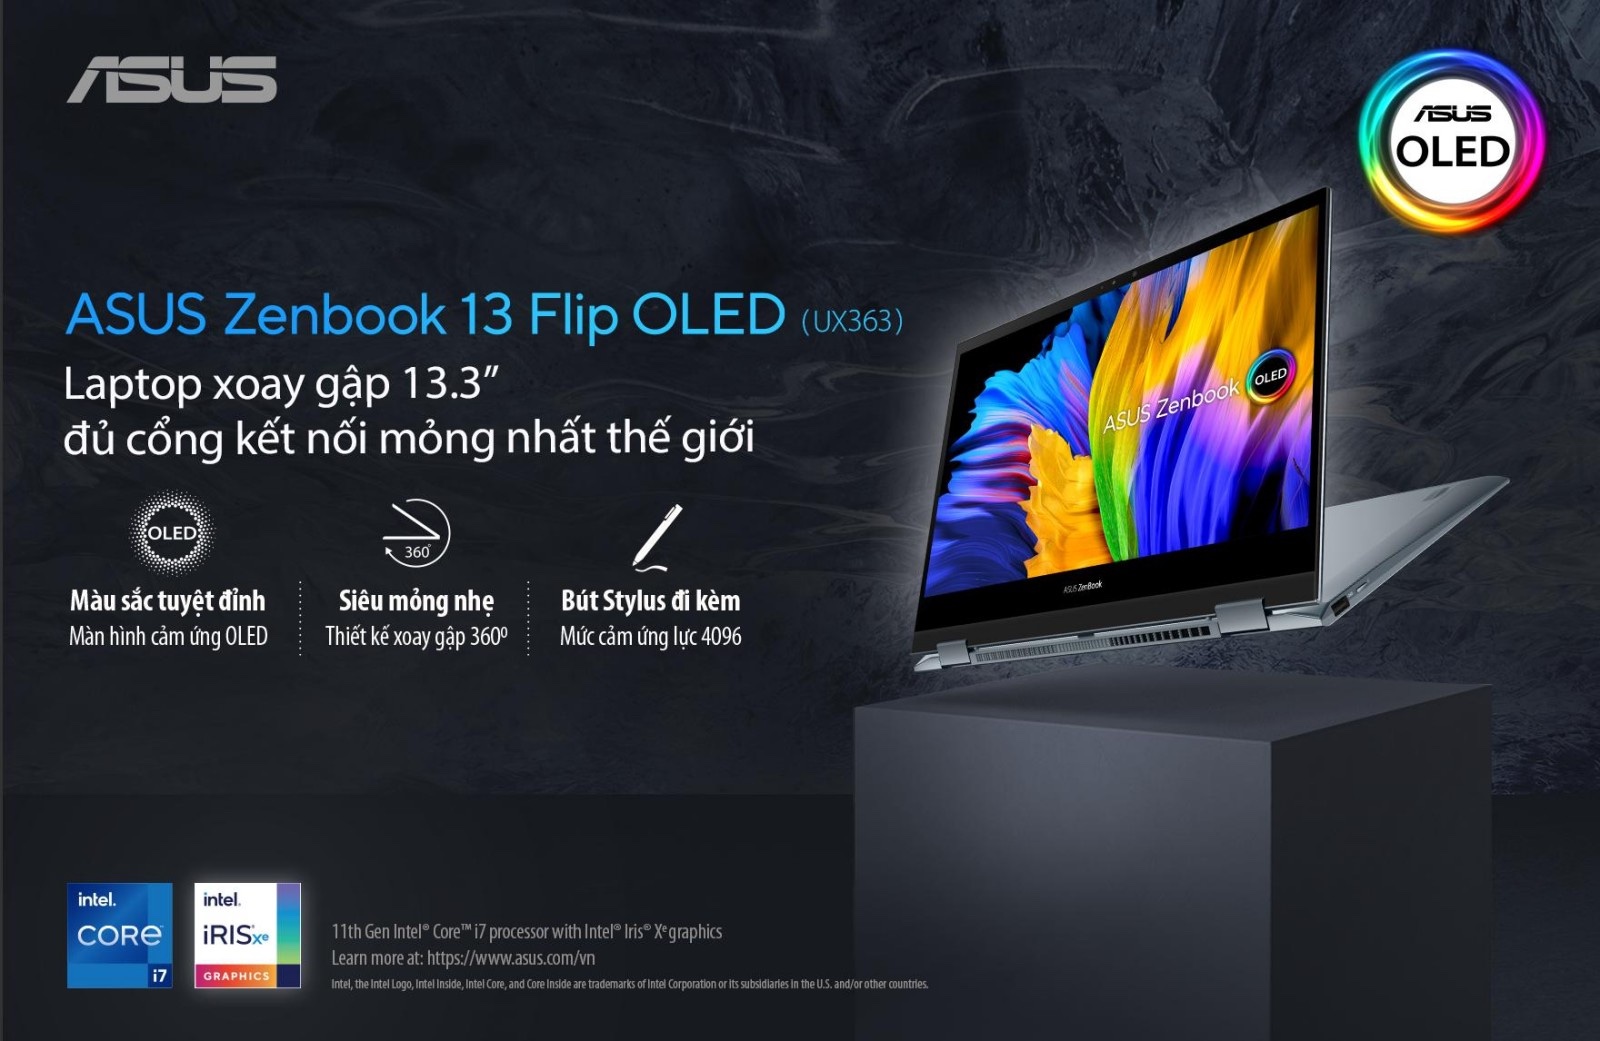 “OLED GO BIG”: ASUS tiếp tục cuộc chơi lớn với loạt laptop màn hình OLED tại Việt Nam